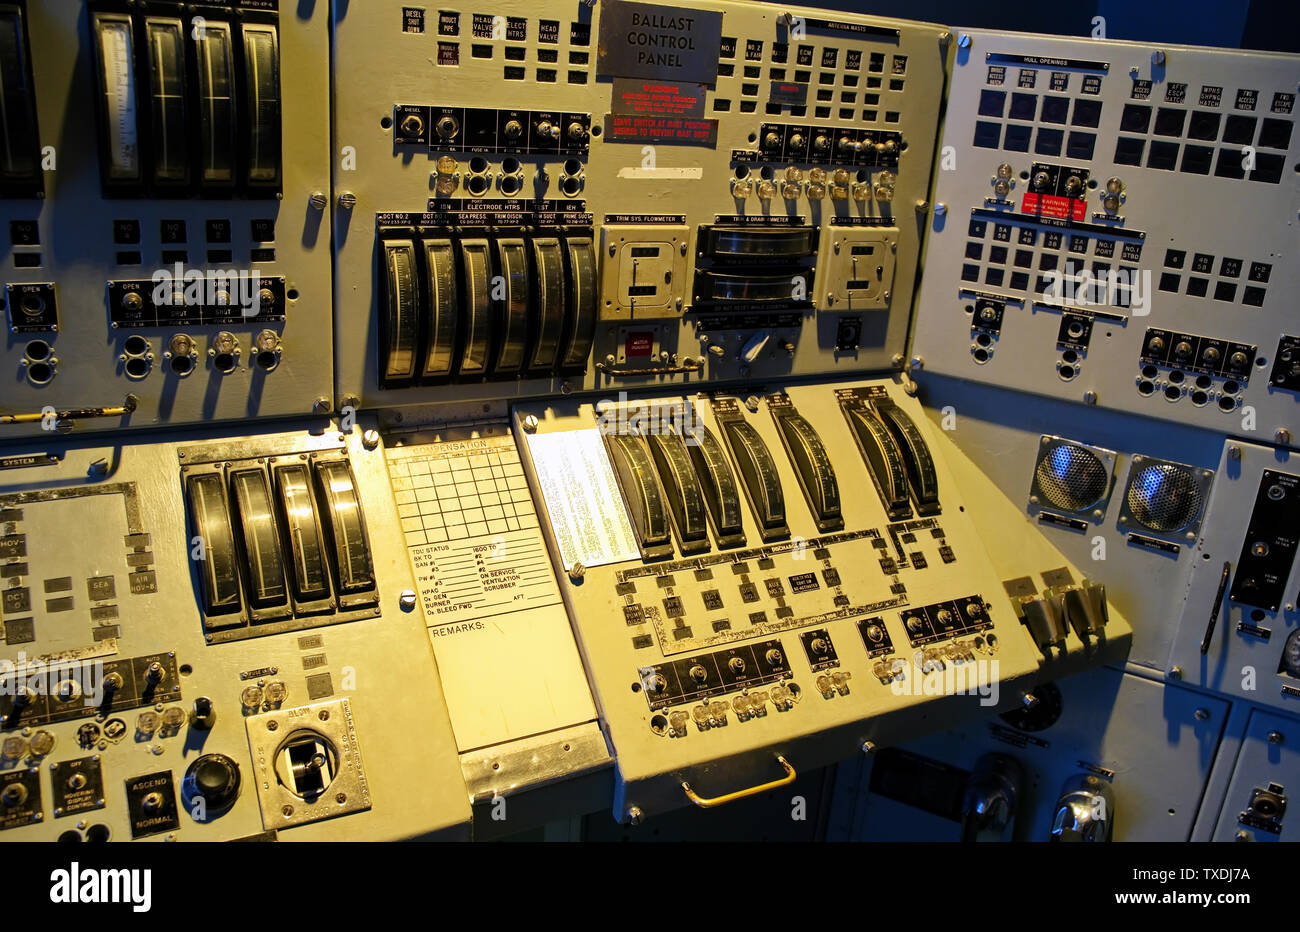 Le Musée de la force sous-marine de Groton, CT USA, juin 2019. La station de contrôle d'un sous-marin à propulsion nucléaire. Banque D'Images